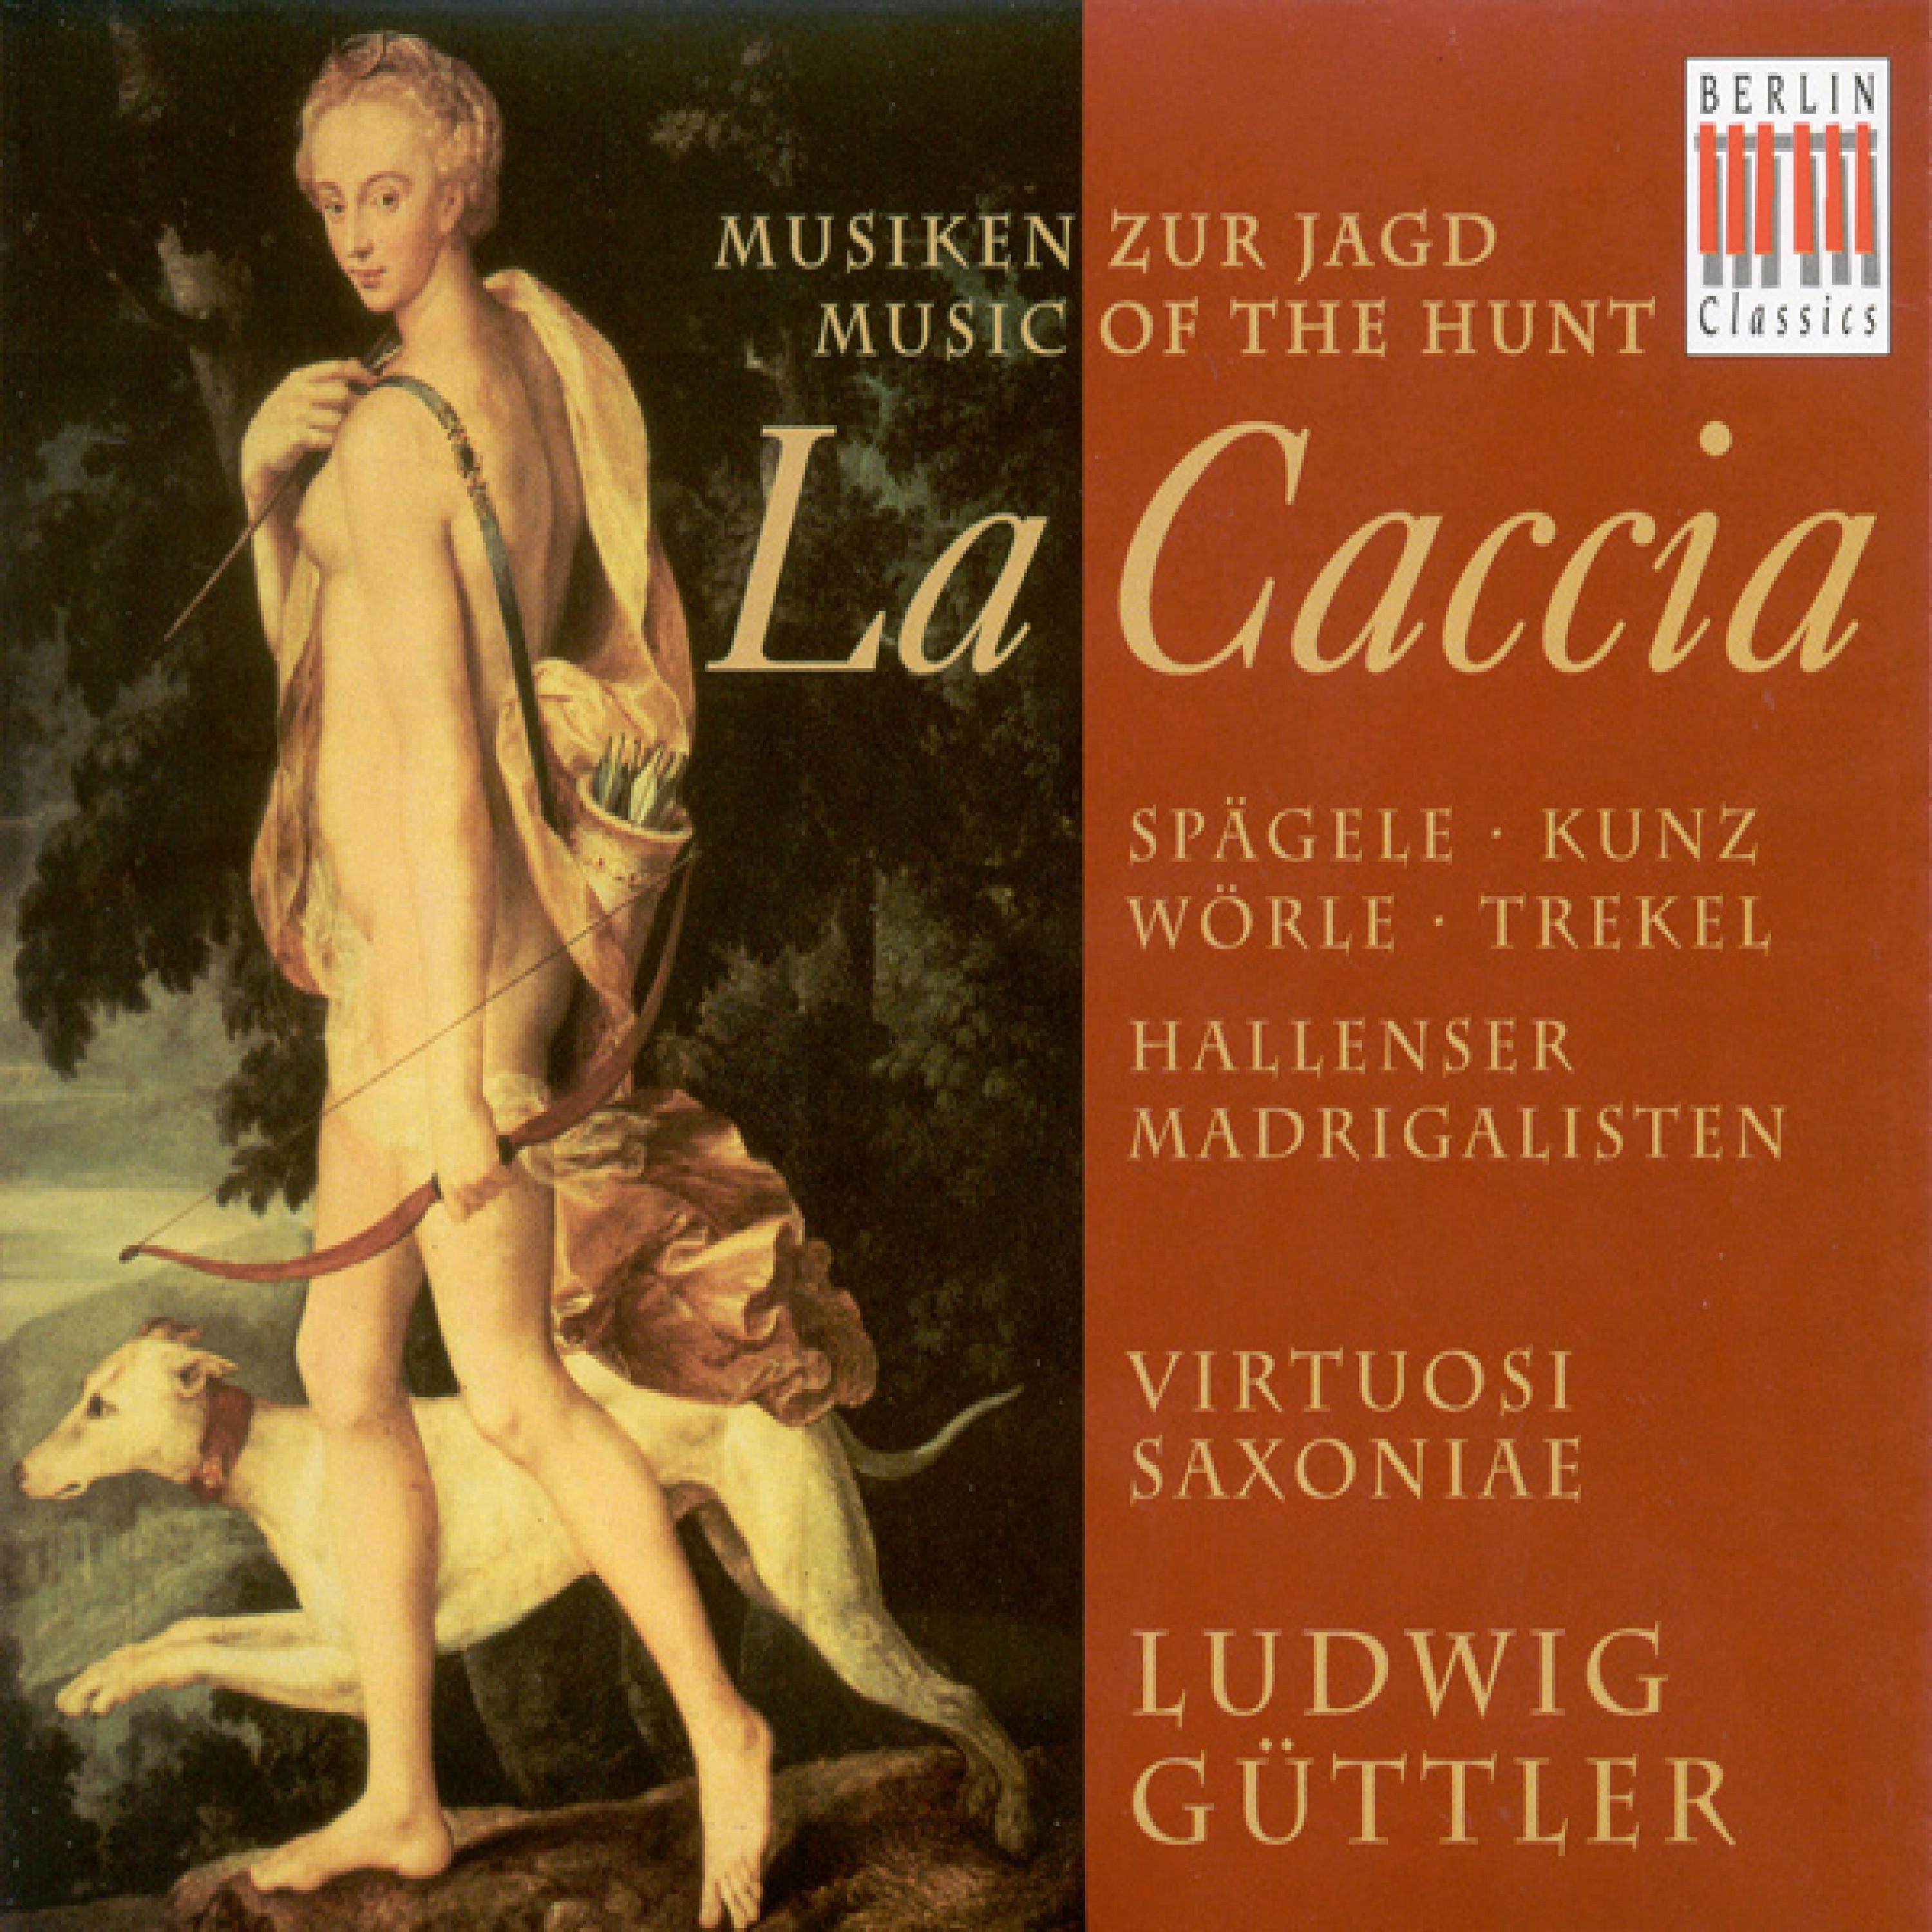 Concerto for 2 Corno da caccia, 2 Oboes and Bassoon in D major arr. M. Fechner: I.